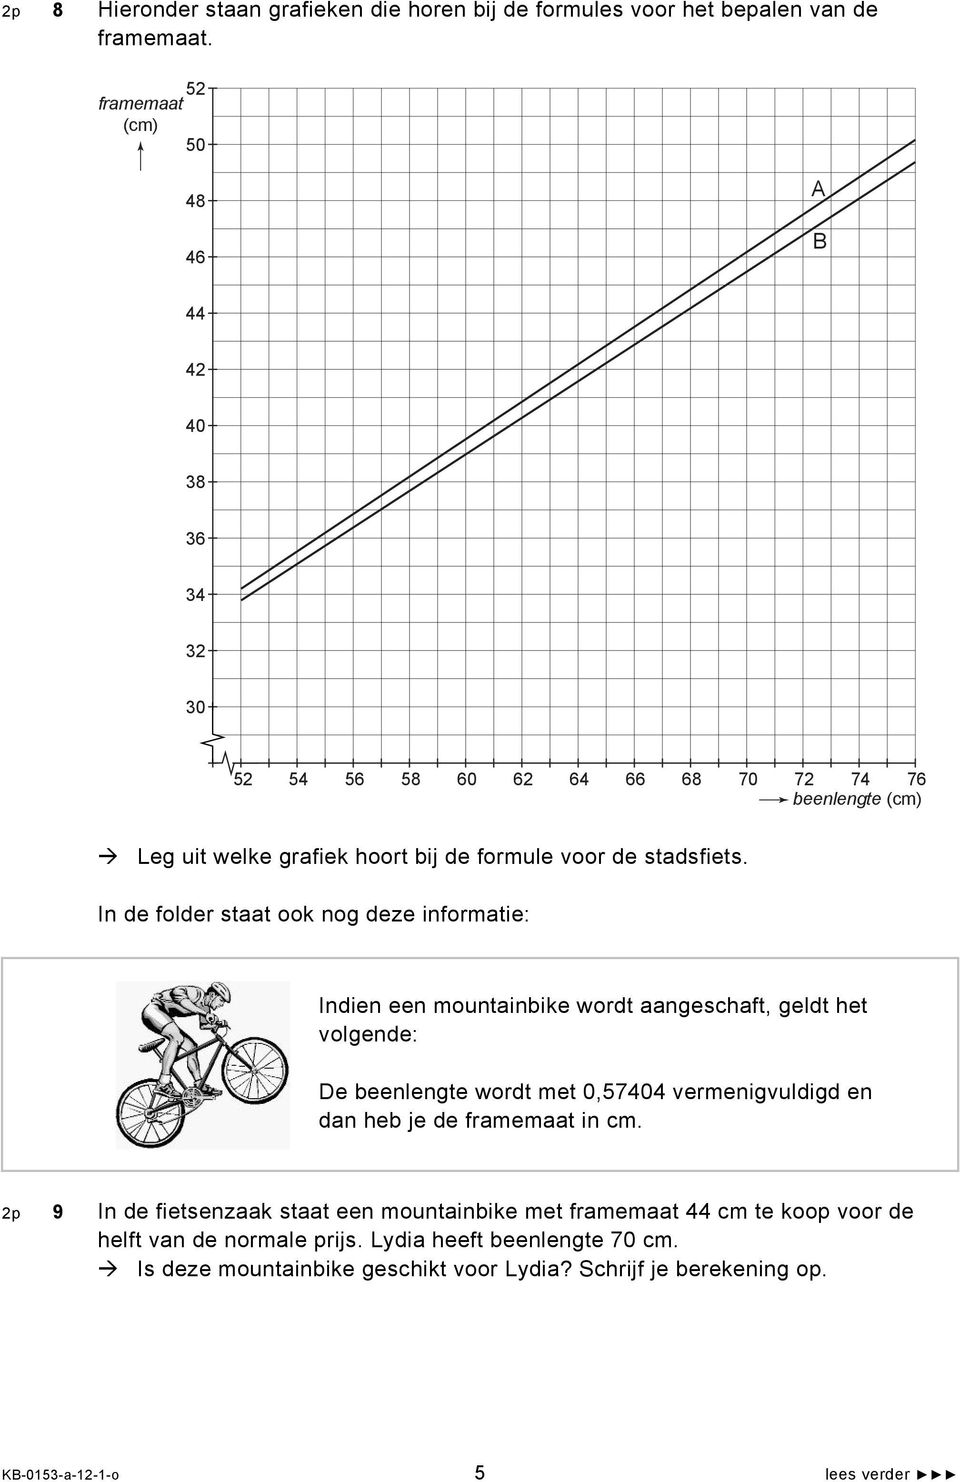 In de folder staat ook nog deze informatie: Indien een mountainbike wordt aangeschaft, geldt het volgende: De beenlengte wordt met 0,57404 vermenigvuldigd en dan heb je de